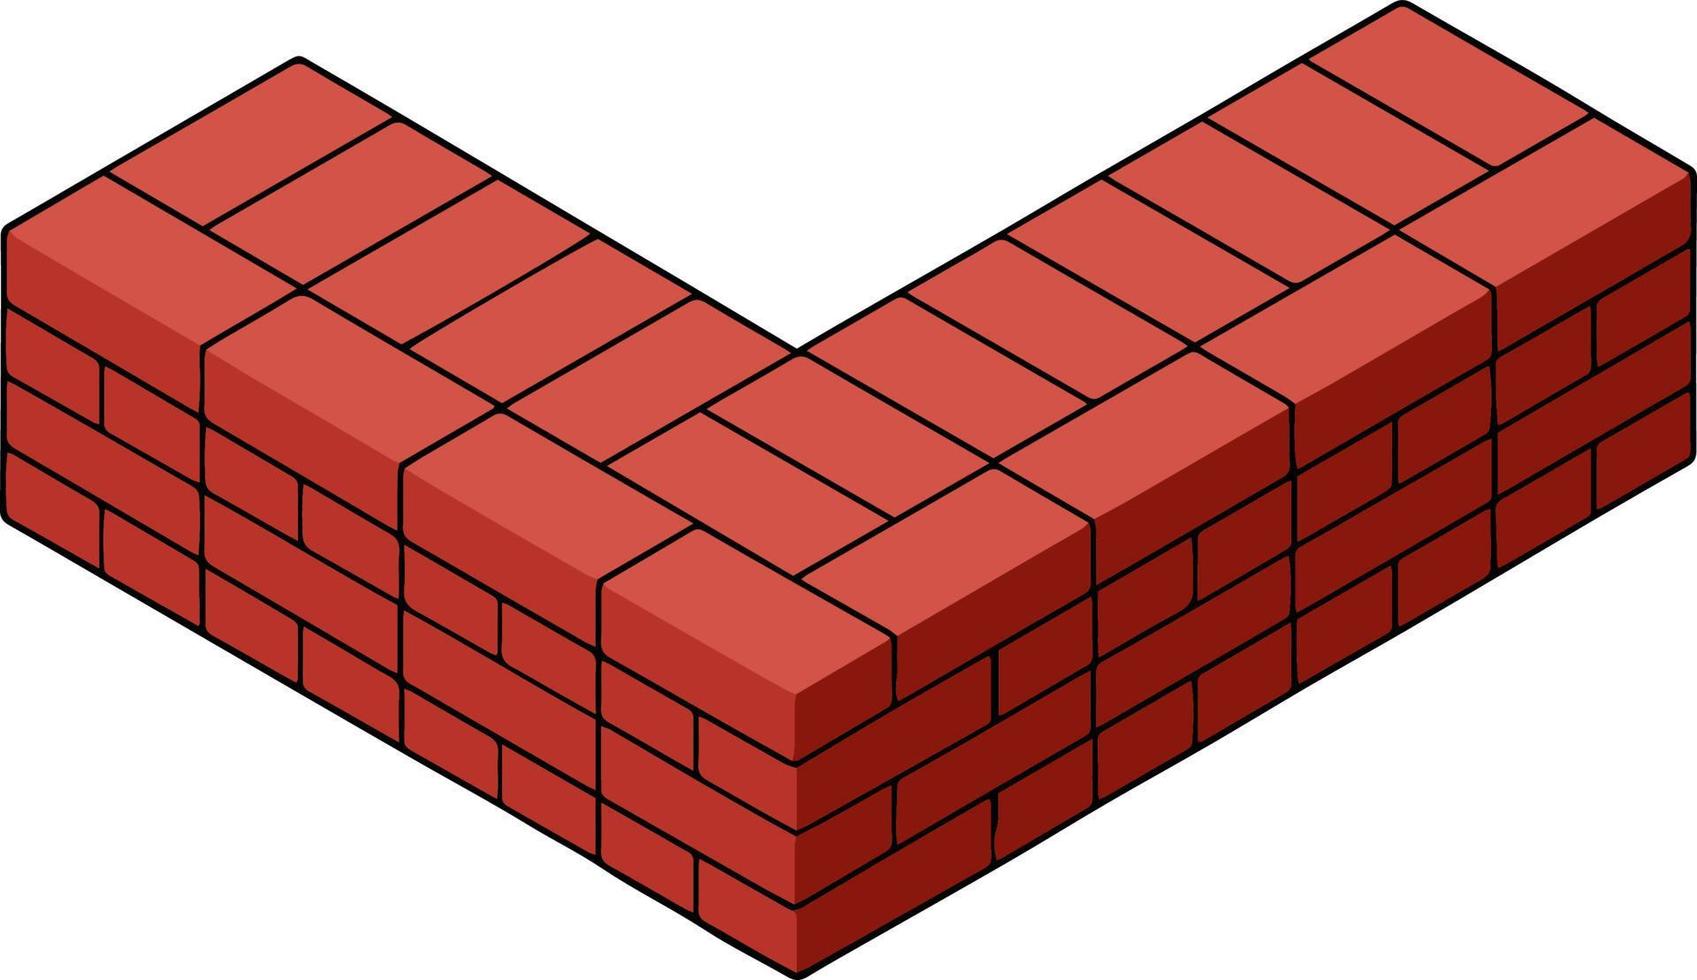 parede de tijolo vermelho da casa. elemento de construção civil. canto do objeto de pedra. ilustração isométrica. símbolo de proteção e segurança vetor